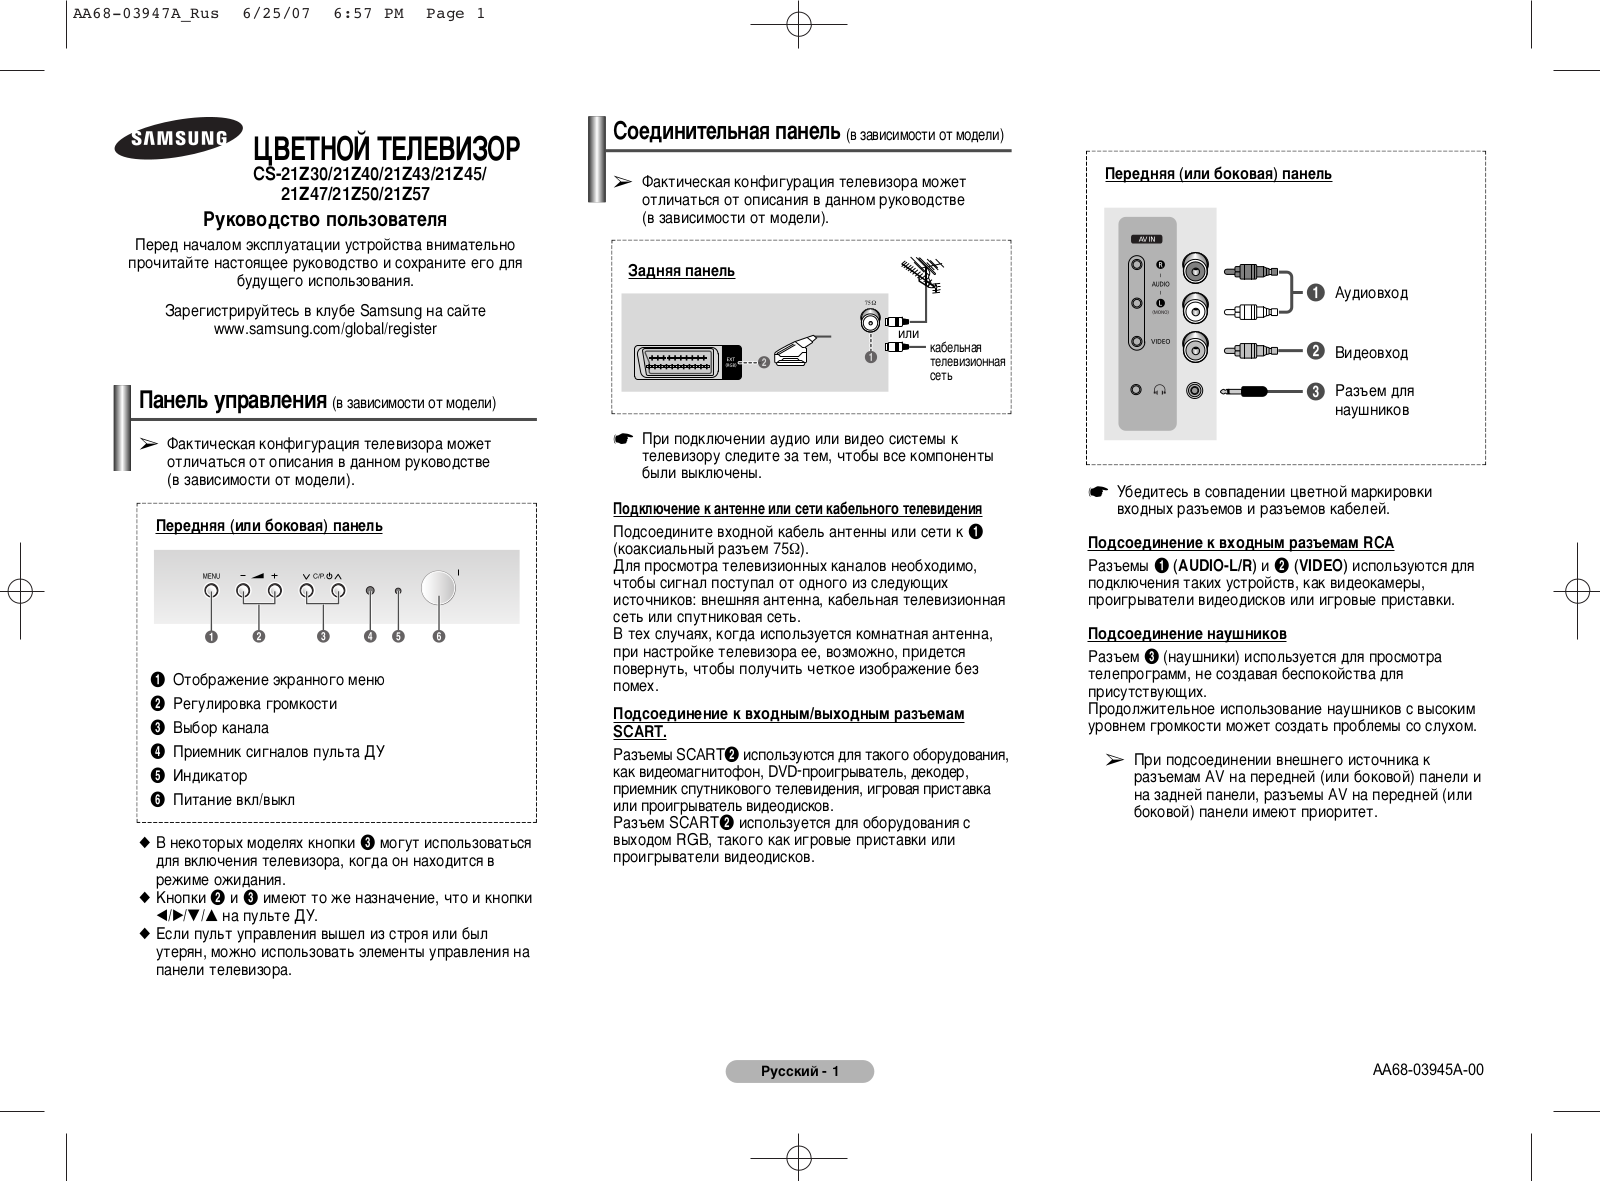 Samsung CS-21Z57 Z3Q User Manual